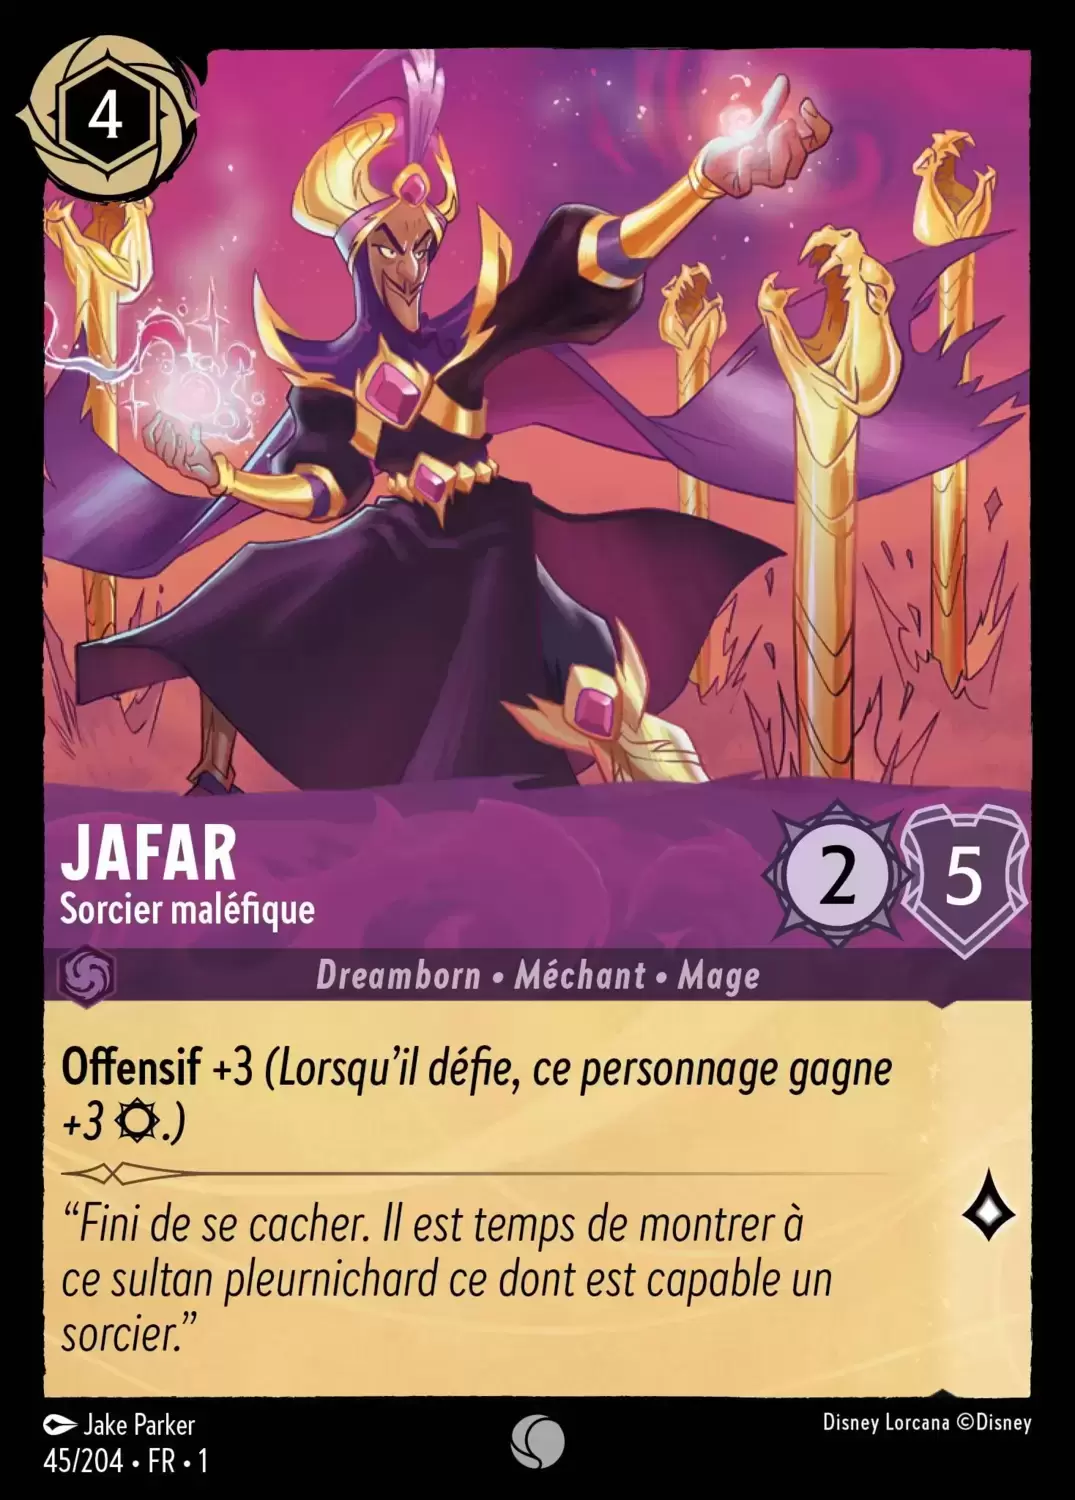 Premier chapitre - Jafar - Sorcier maléfique